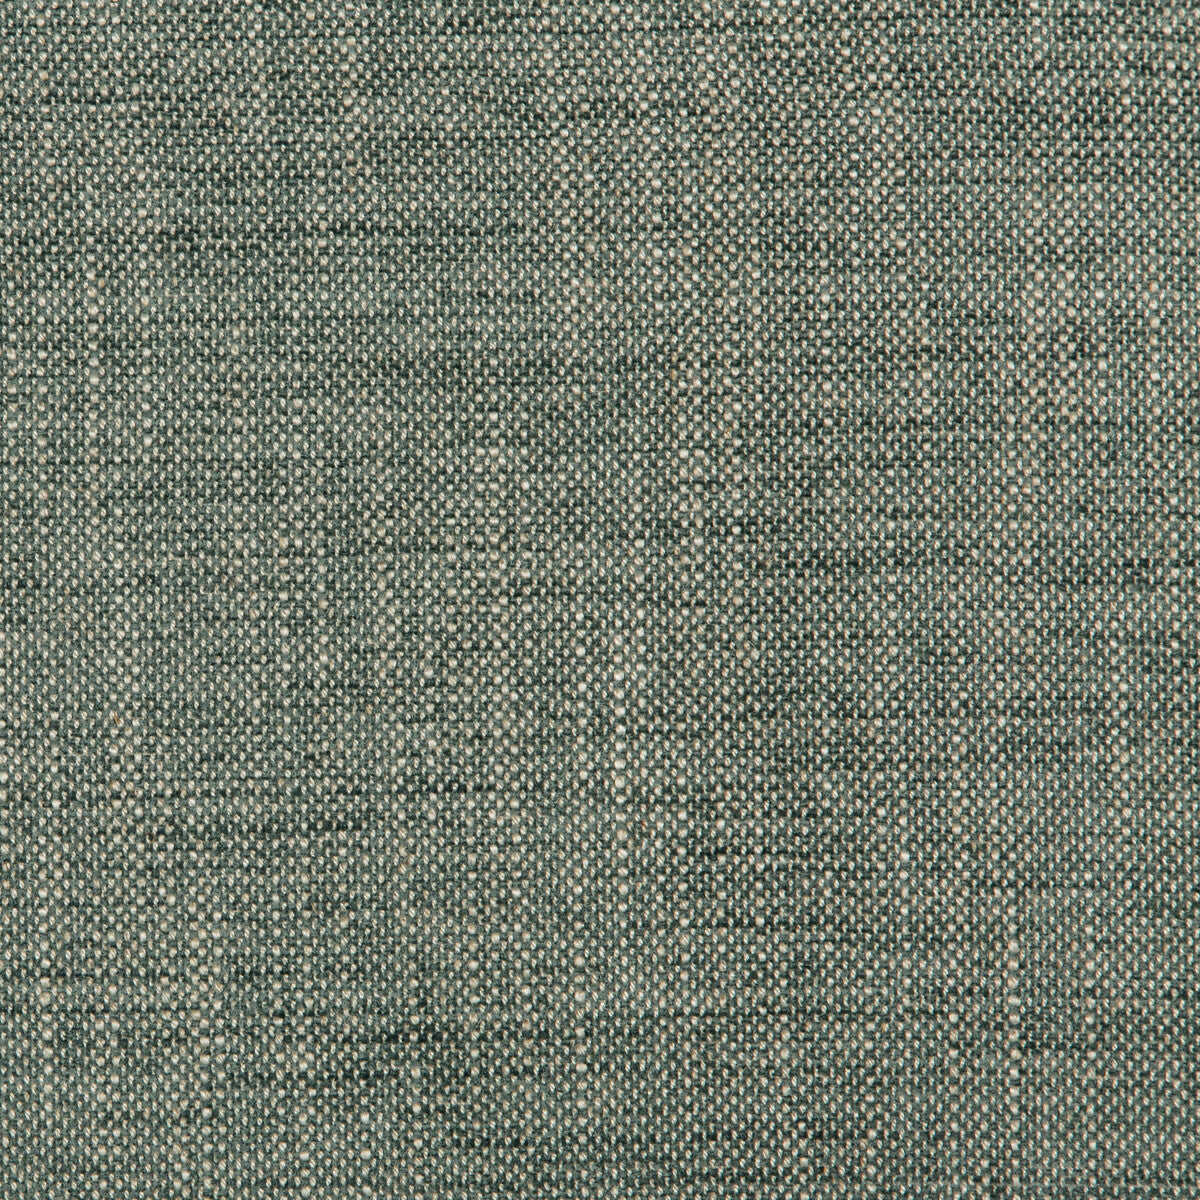 Kravet Design fabric in 35714-135 color - pattern 35714.135.0 - by Kravet Design